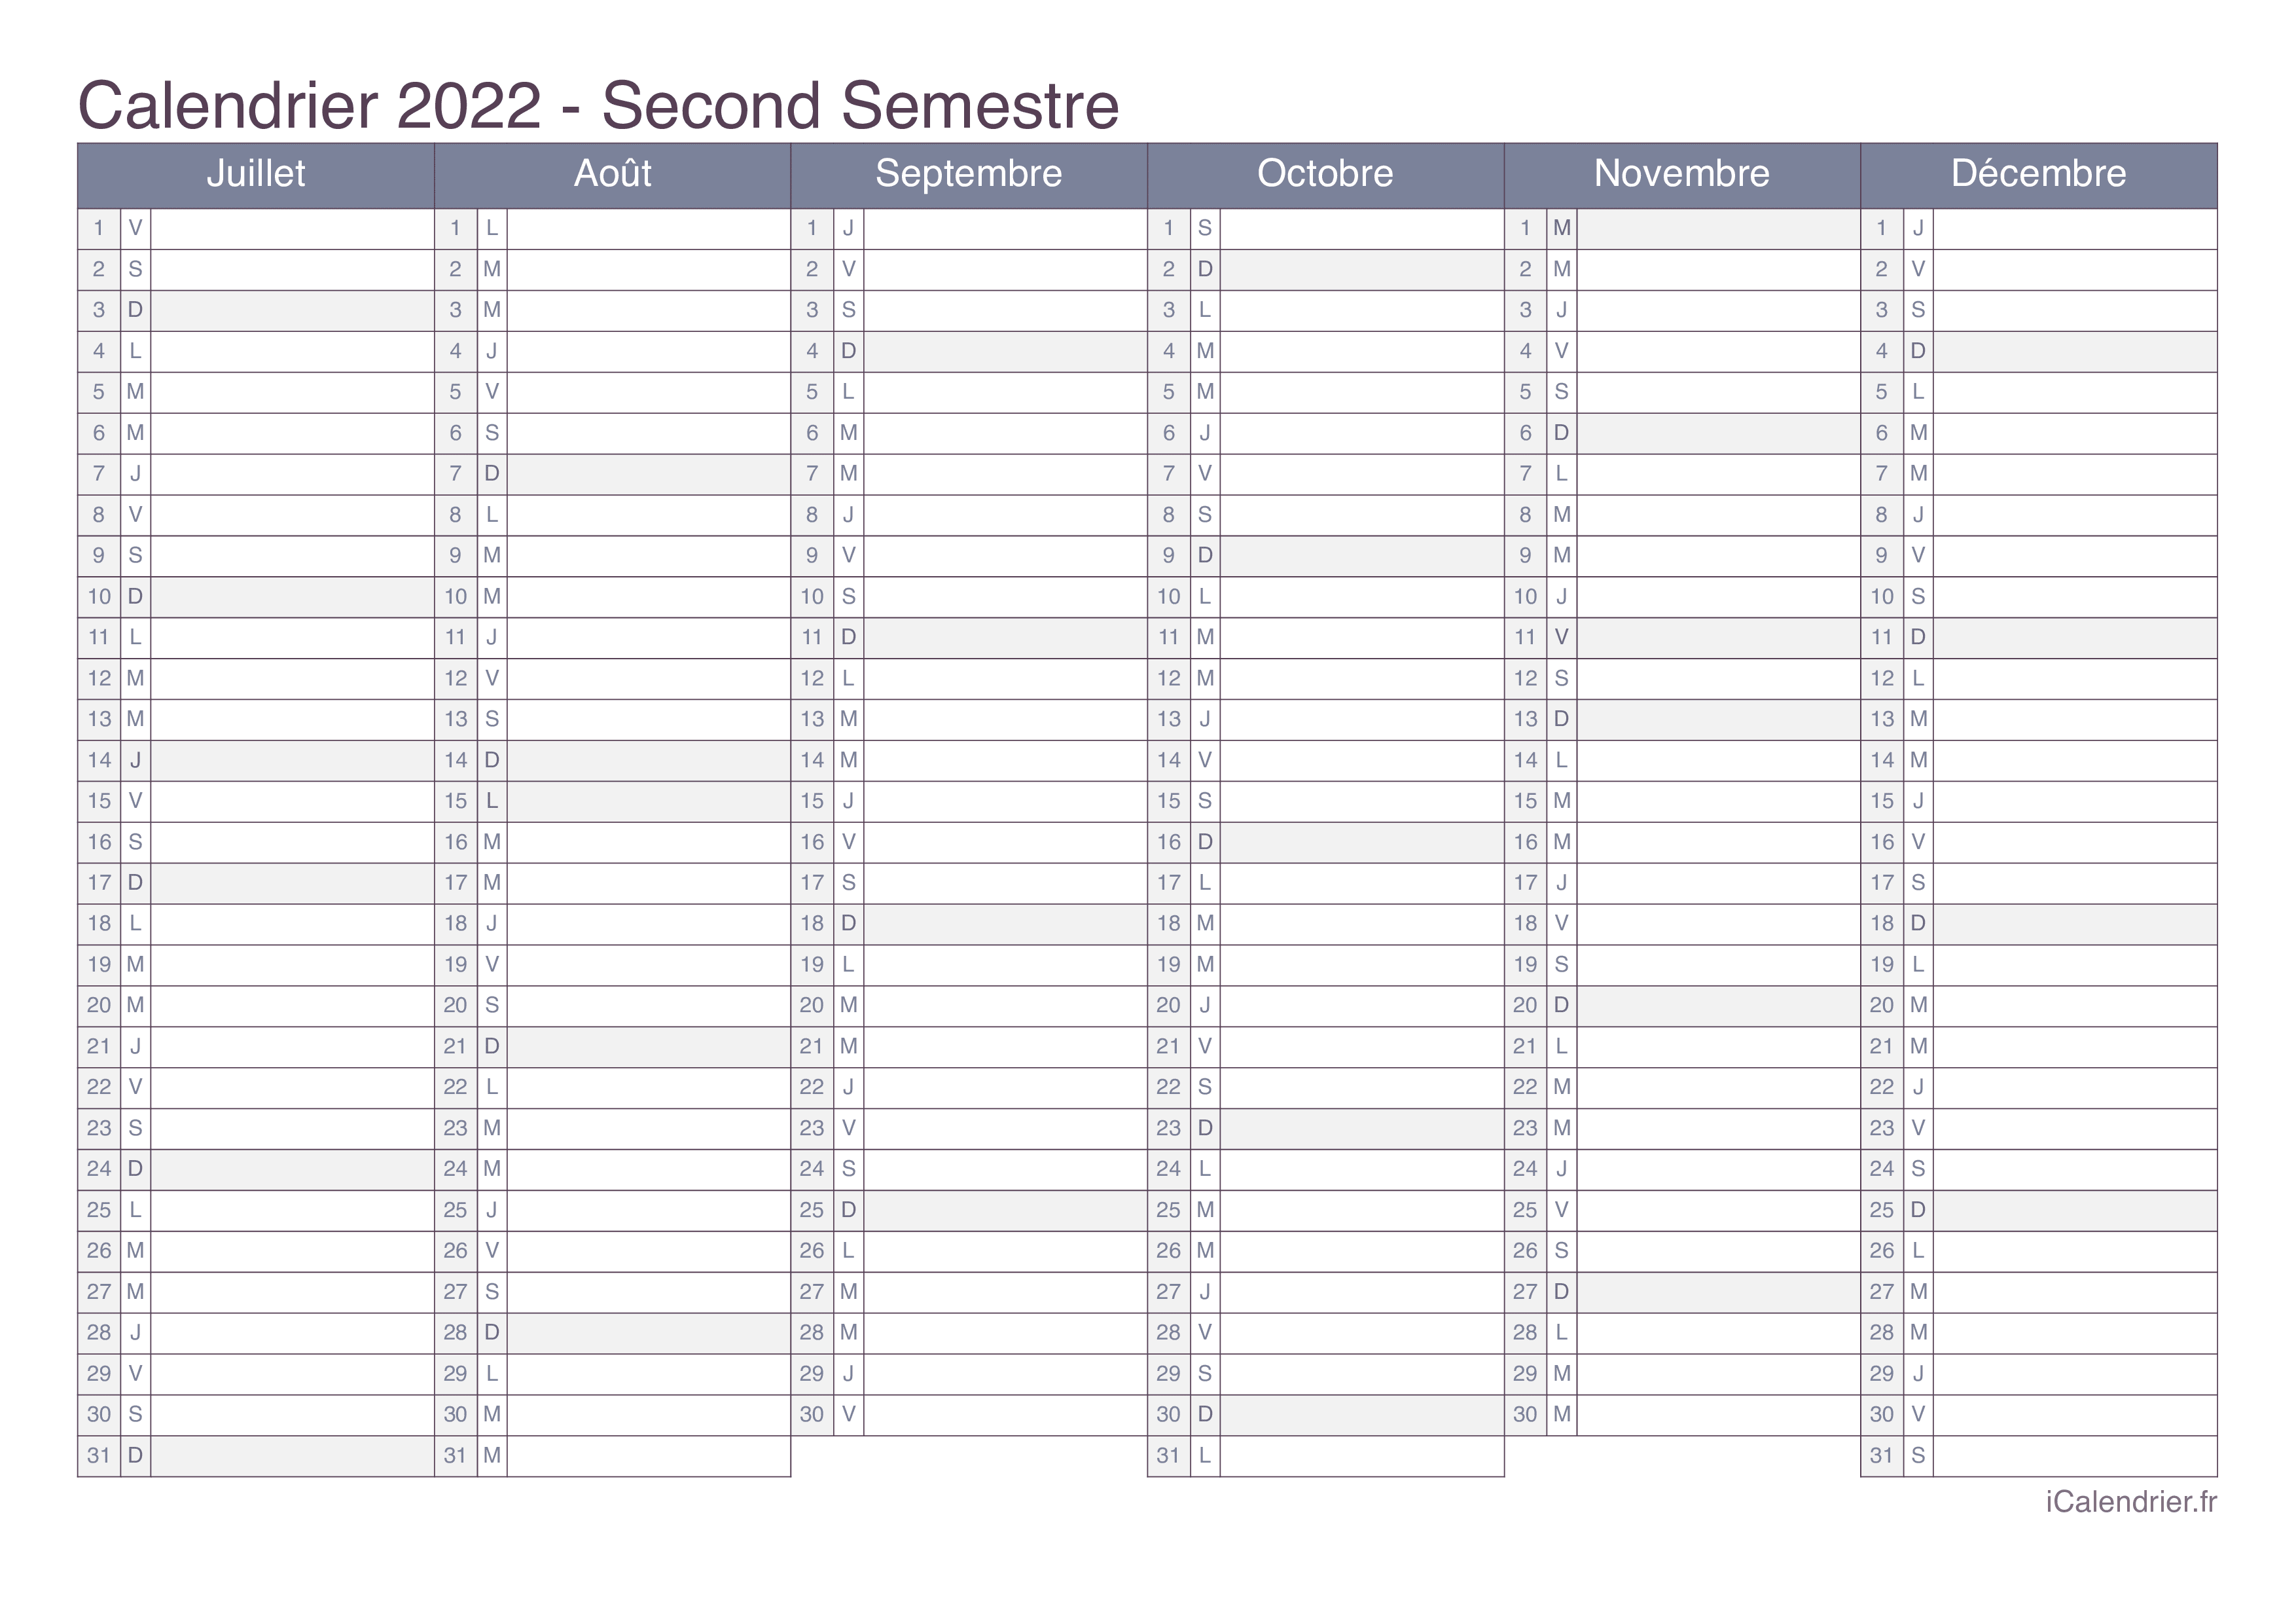 Calendrier 2022 Mensuel Excel Calendrier 2022 à imprimer PDF et Excel   iCalendrier